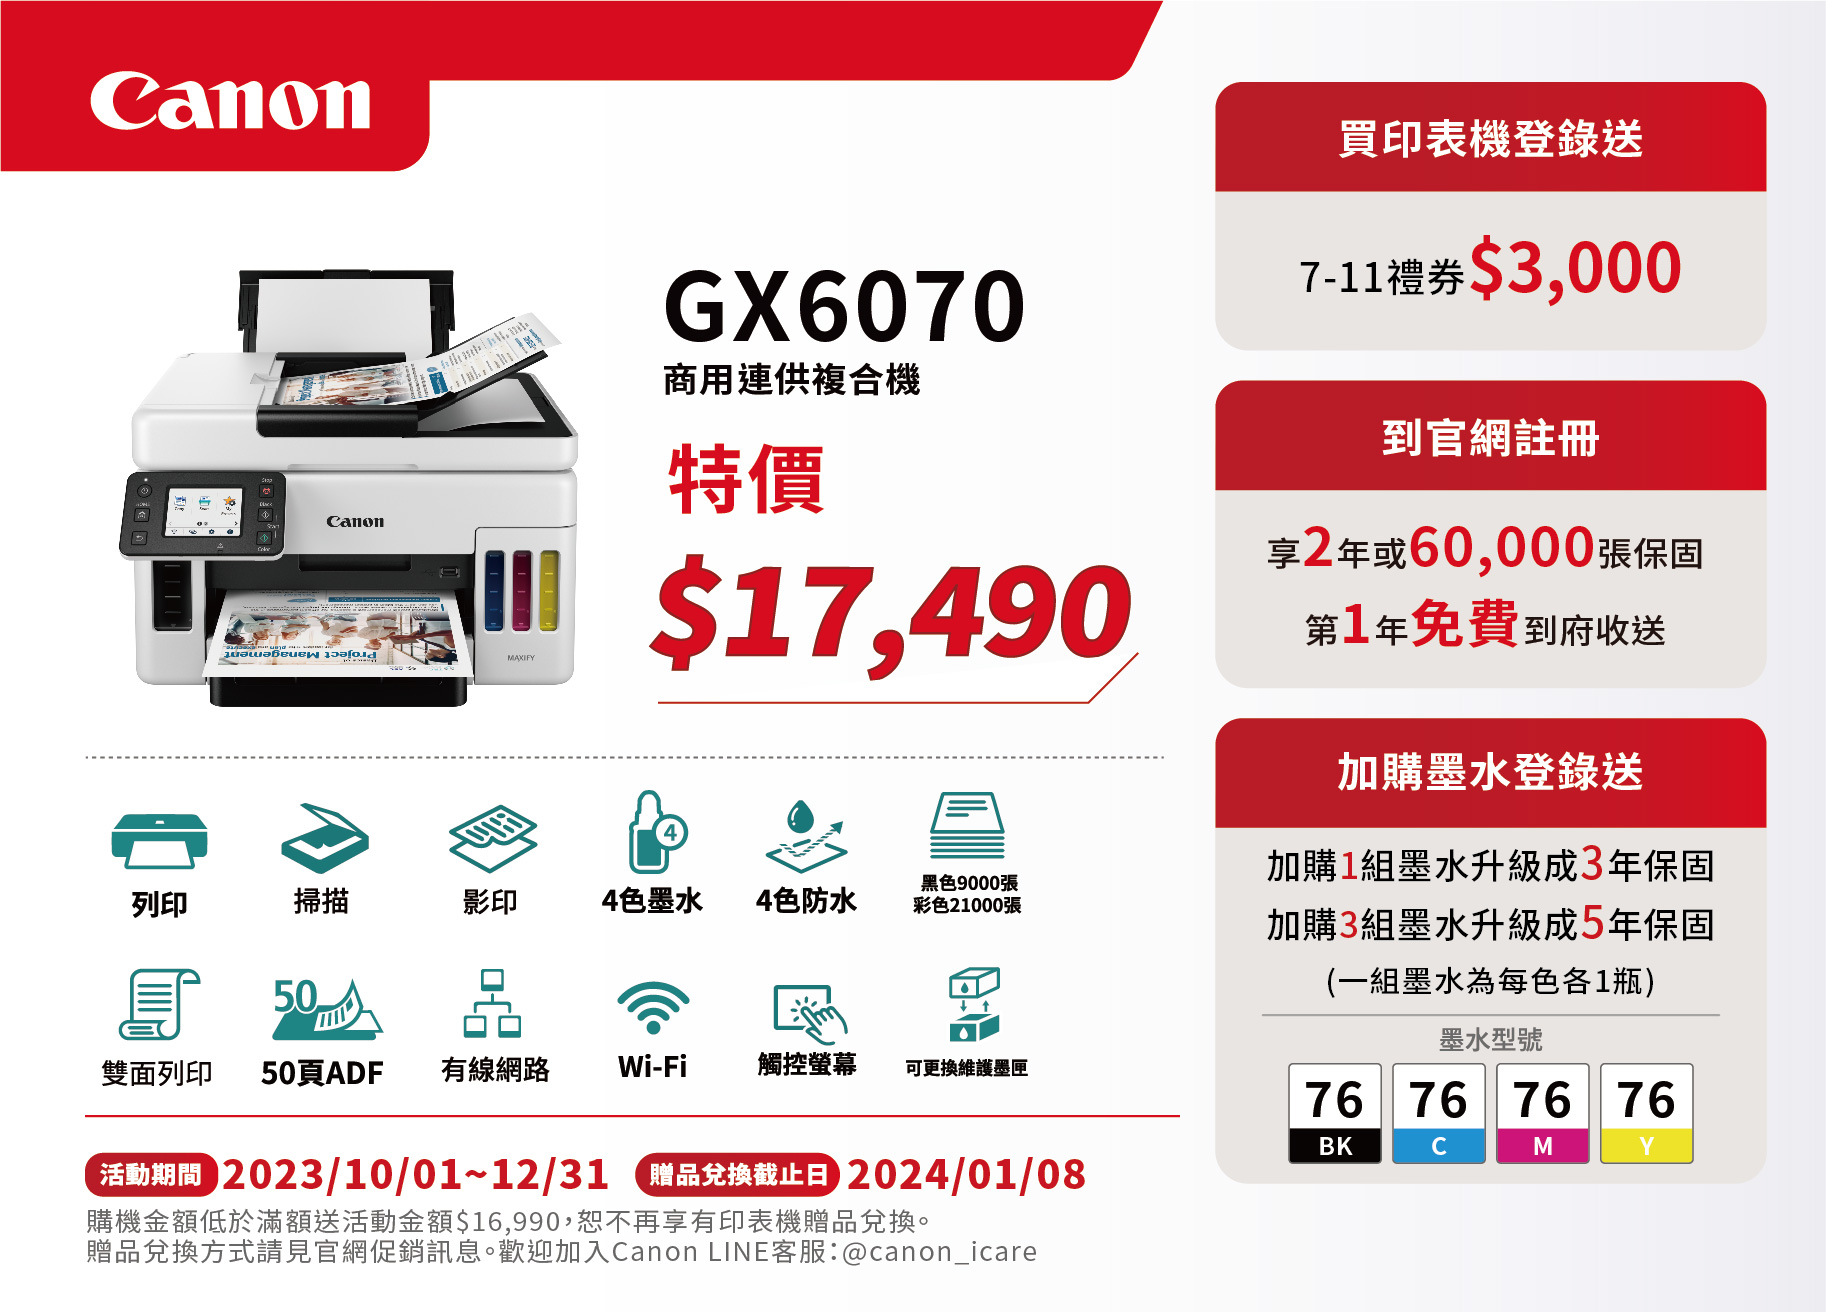 Canon-促銷DM印刷-GX6070-01